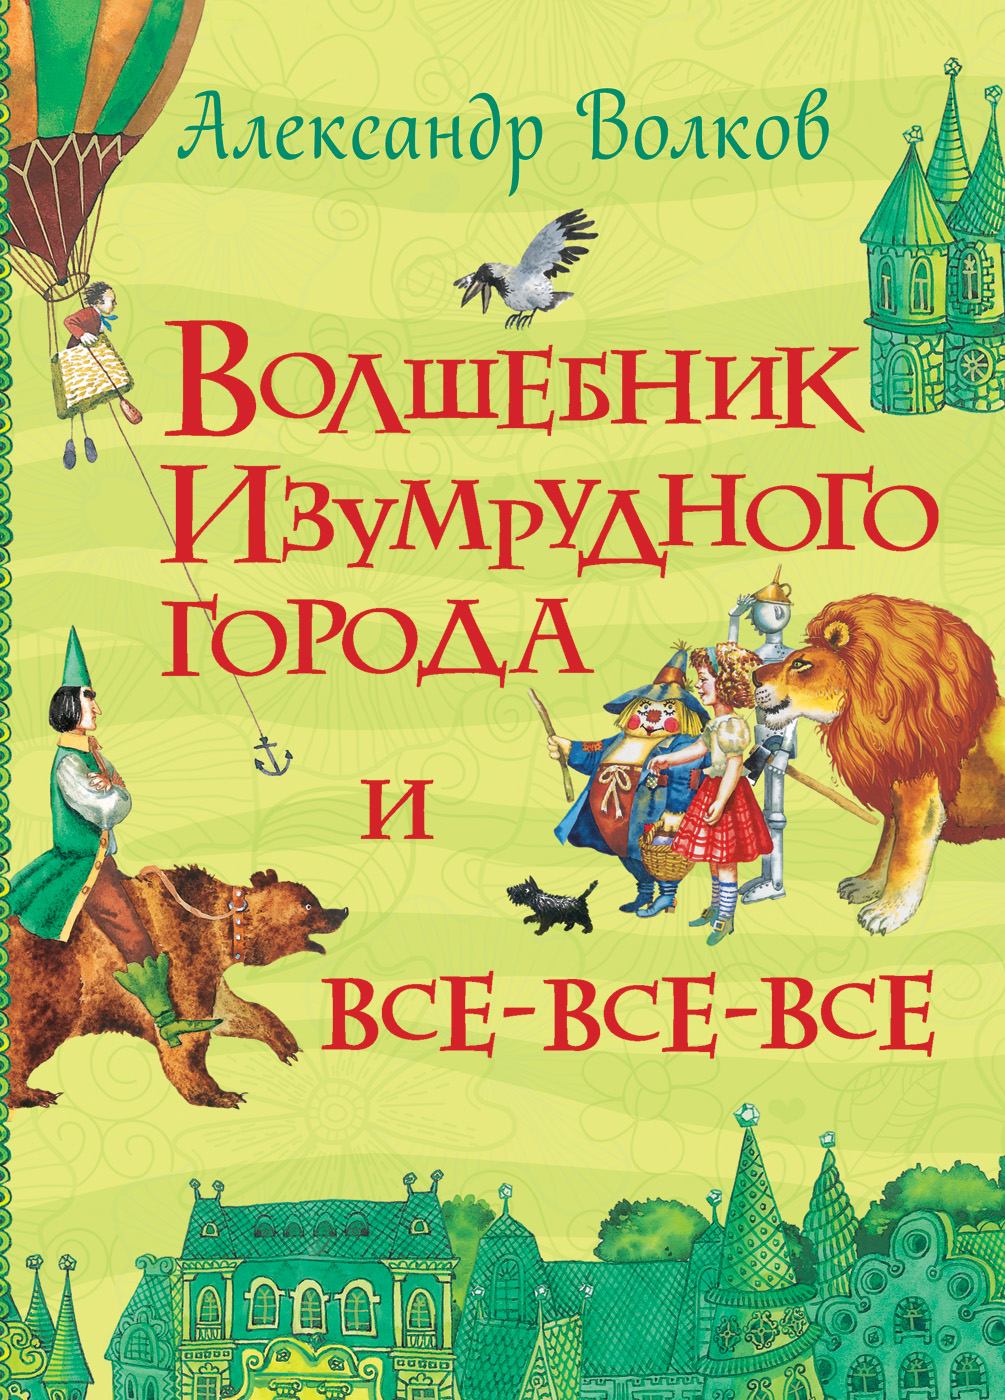 Книга 28489 "Волков А. Волшебник Изумрудного города"  (Все истории) Росмэн - Омск 